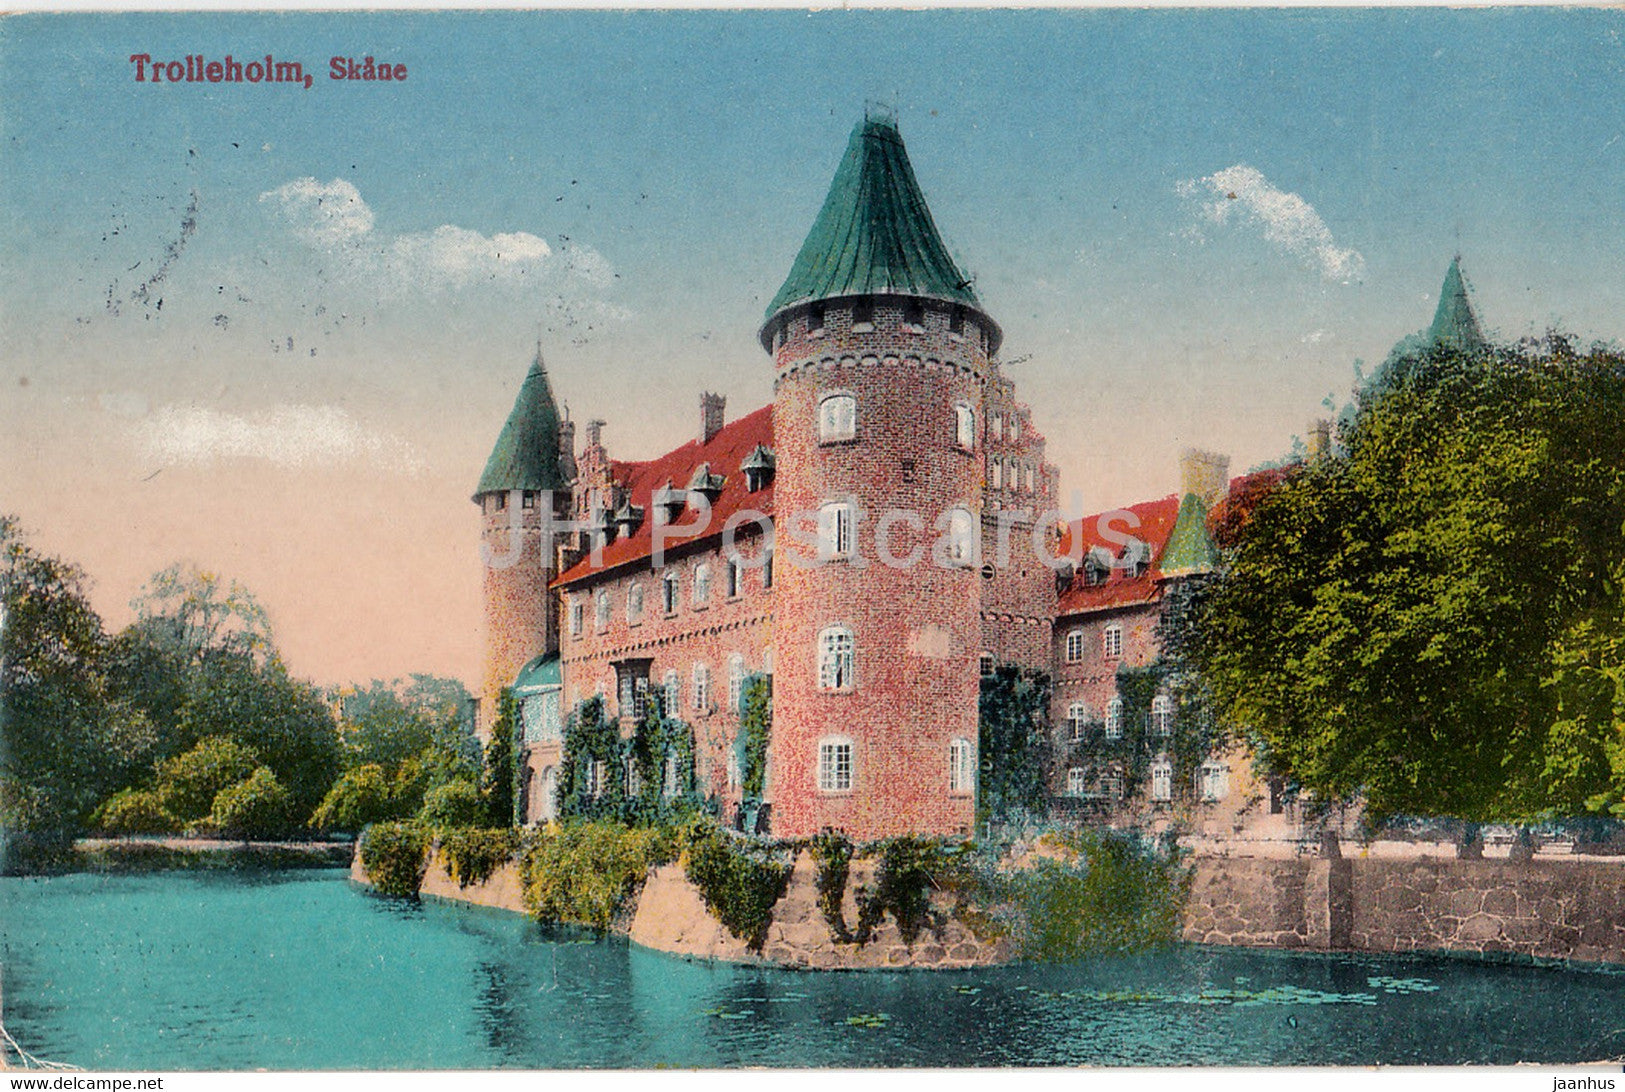 Trolleholm - Skane - old postcard - 1910 - Sweden - used - JH Postcards